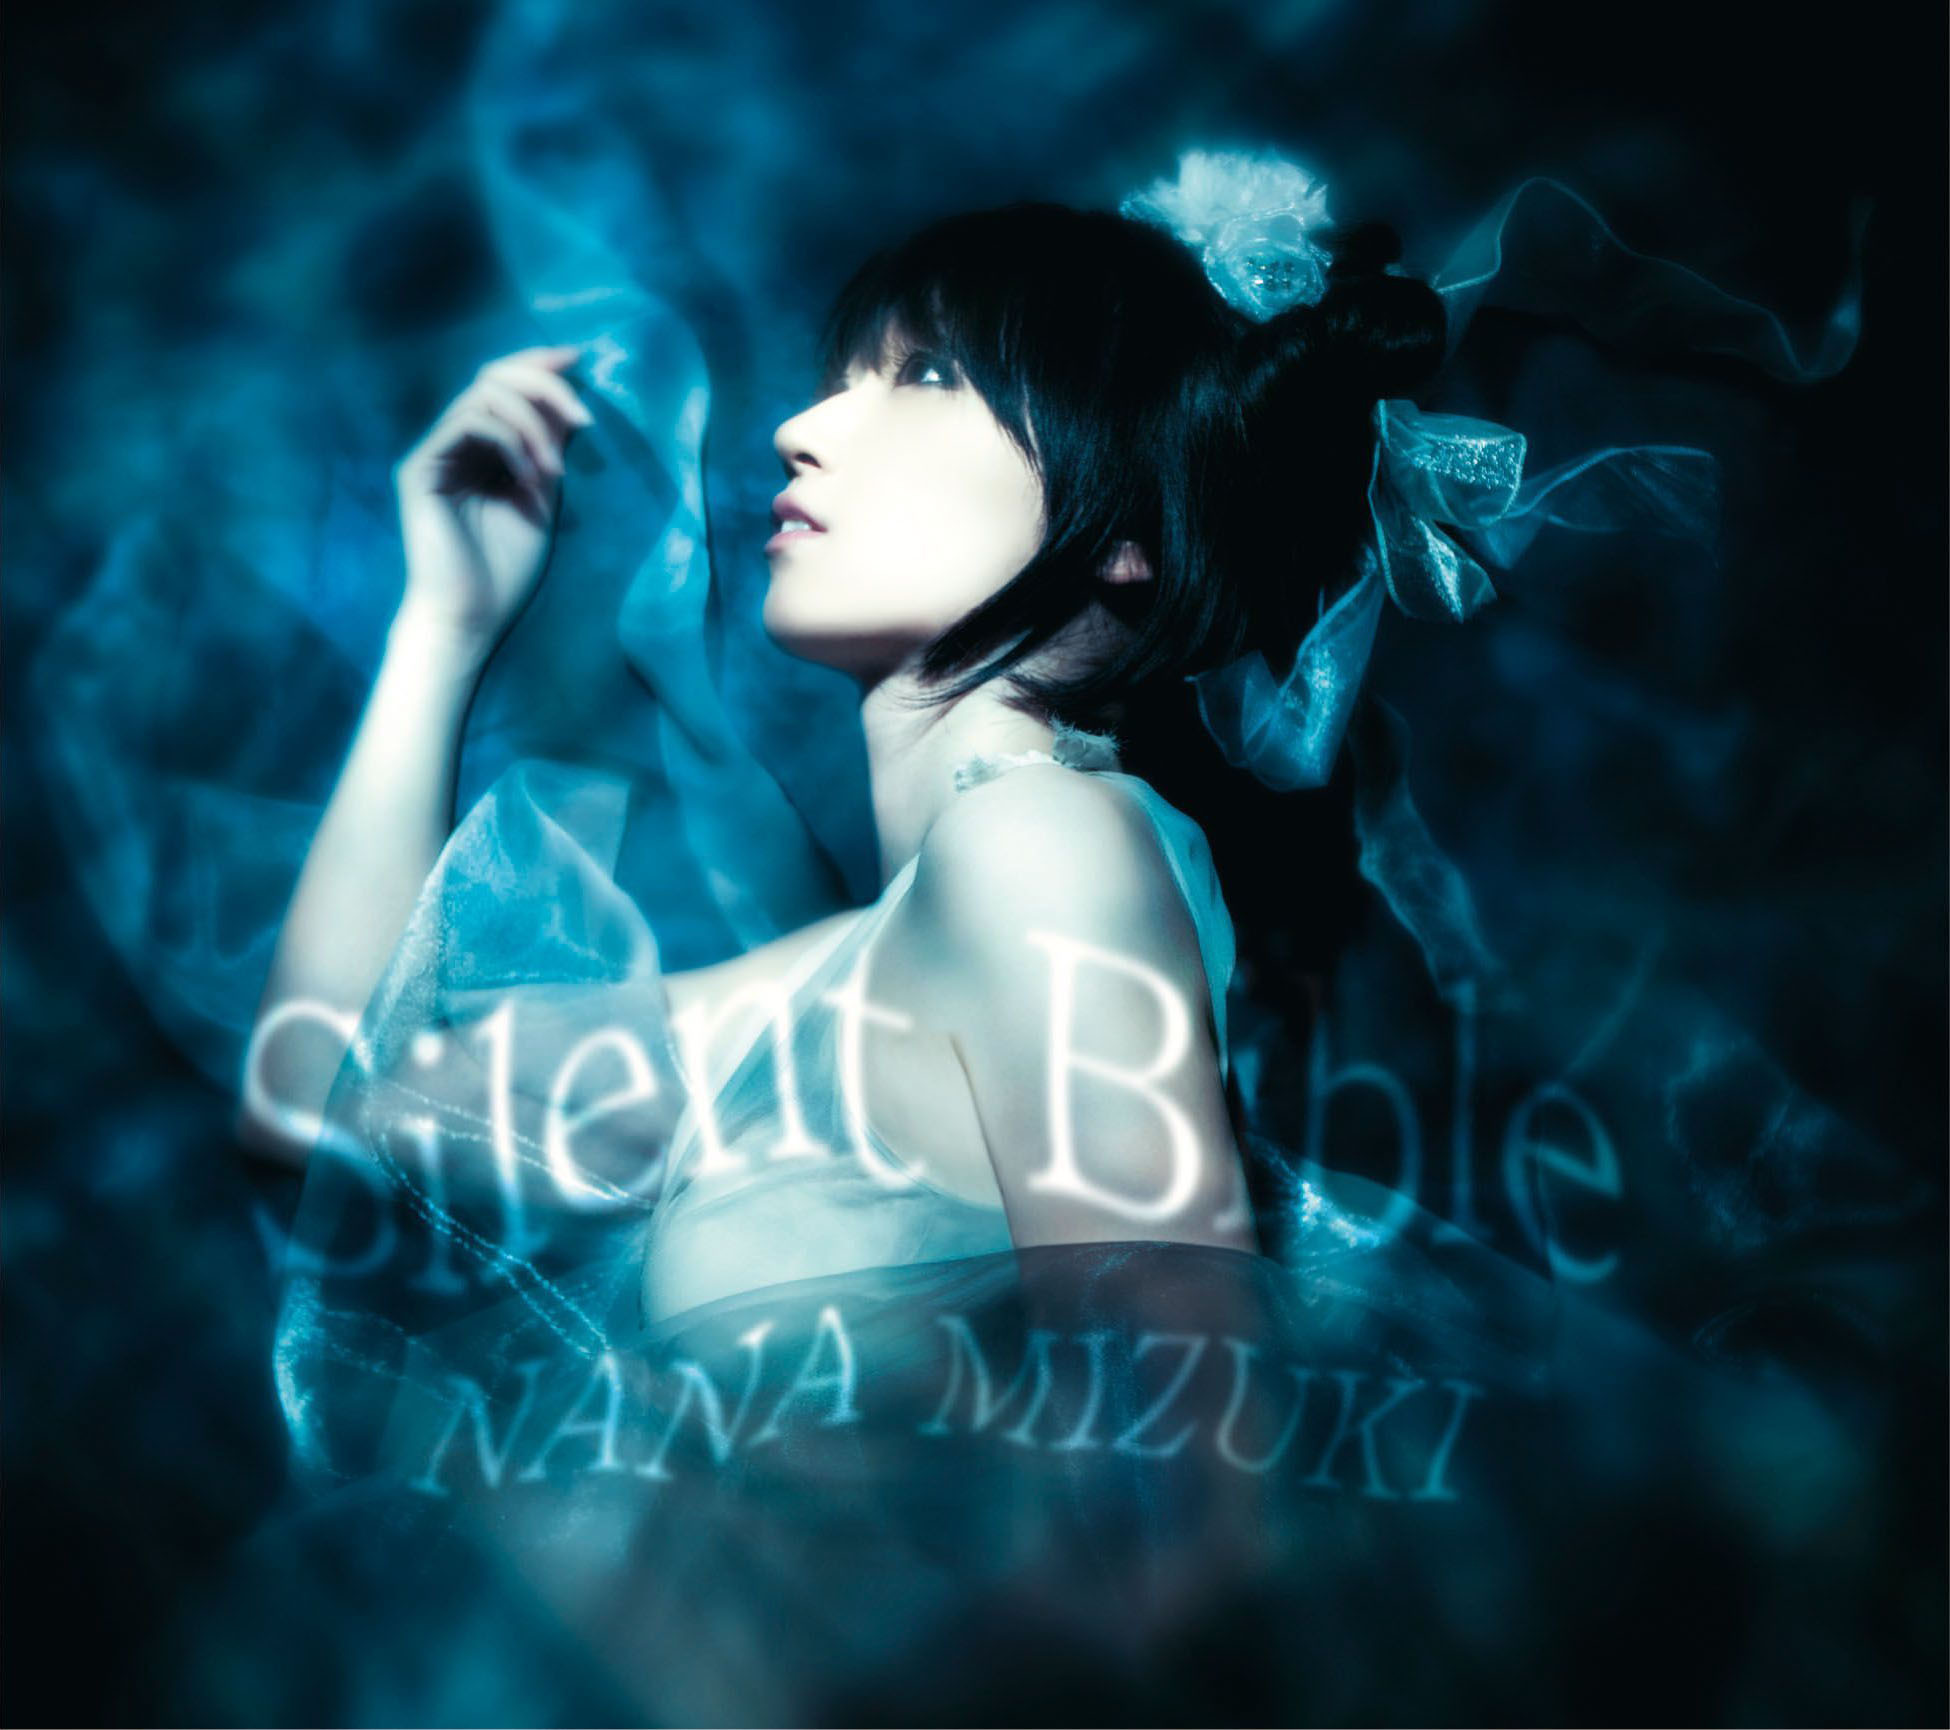 水樹奈々 (みずきなな) 22ndシングル『Silent Bible (サイレント・バイブル)』(2010年2月10日) 高画質ジャケット画像